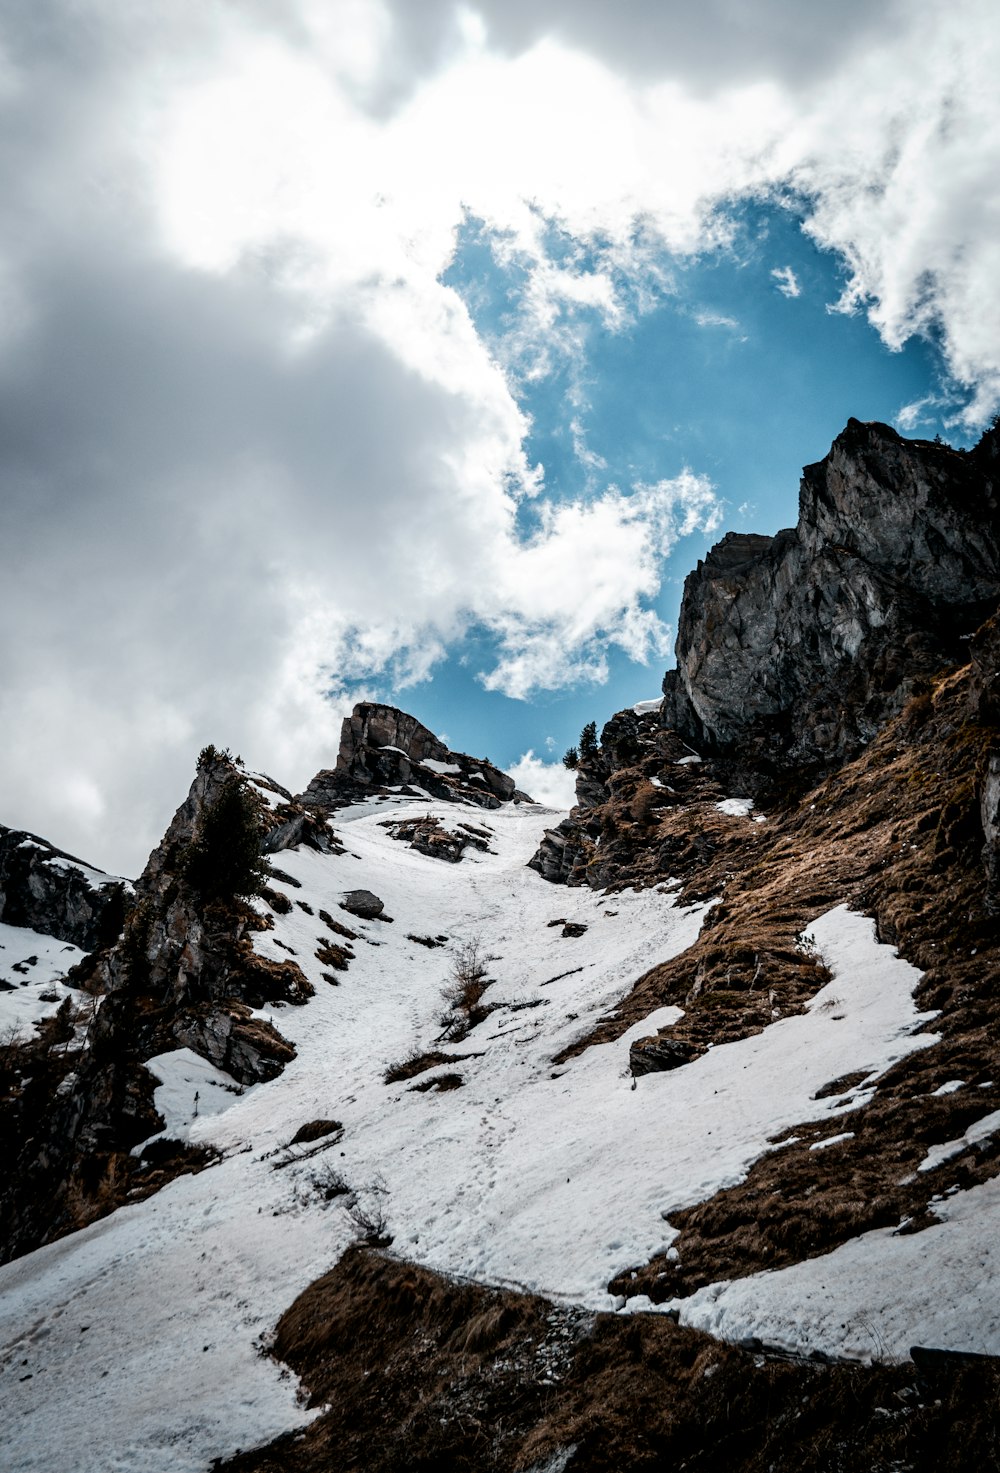 montagna coperta di neve sotto cielo blu e nuvole bianche durante il giorno